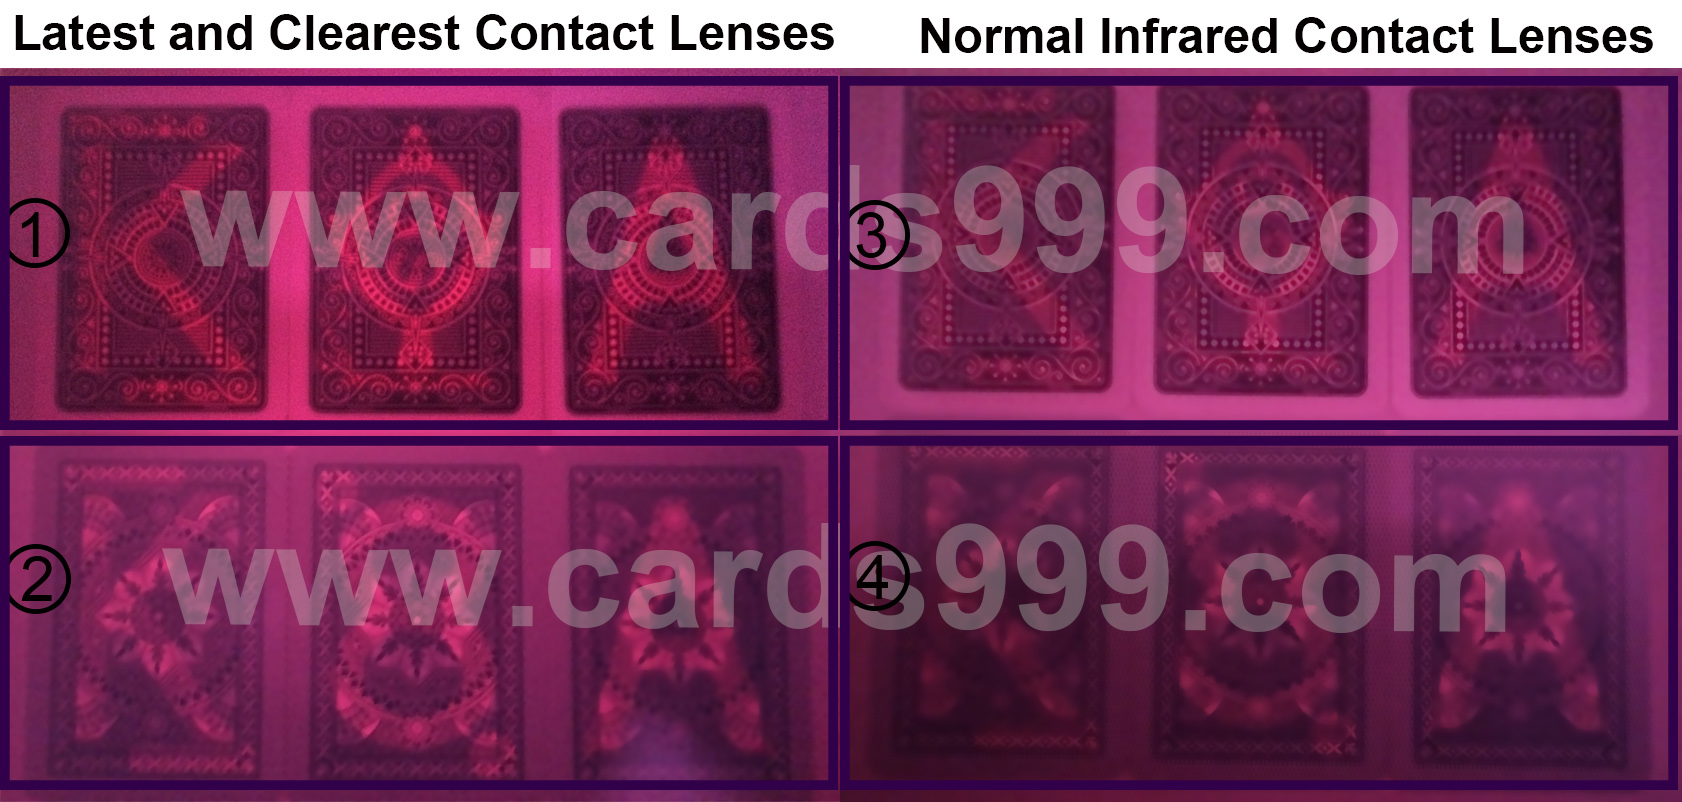 Nejnovější a nejjasnější Infračervené kontaktní čočky